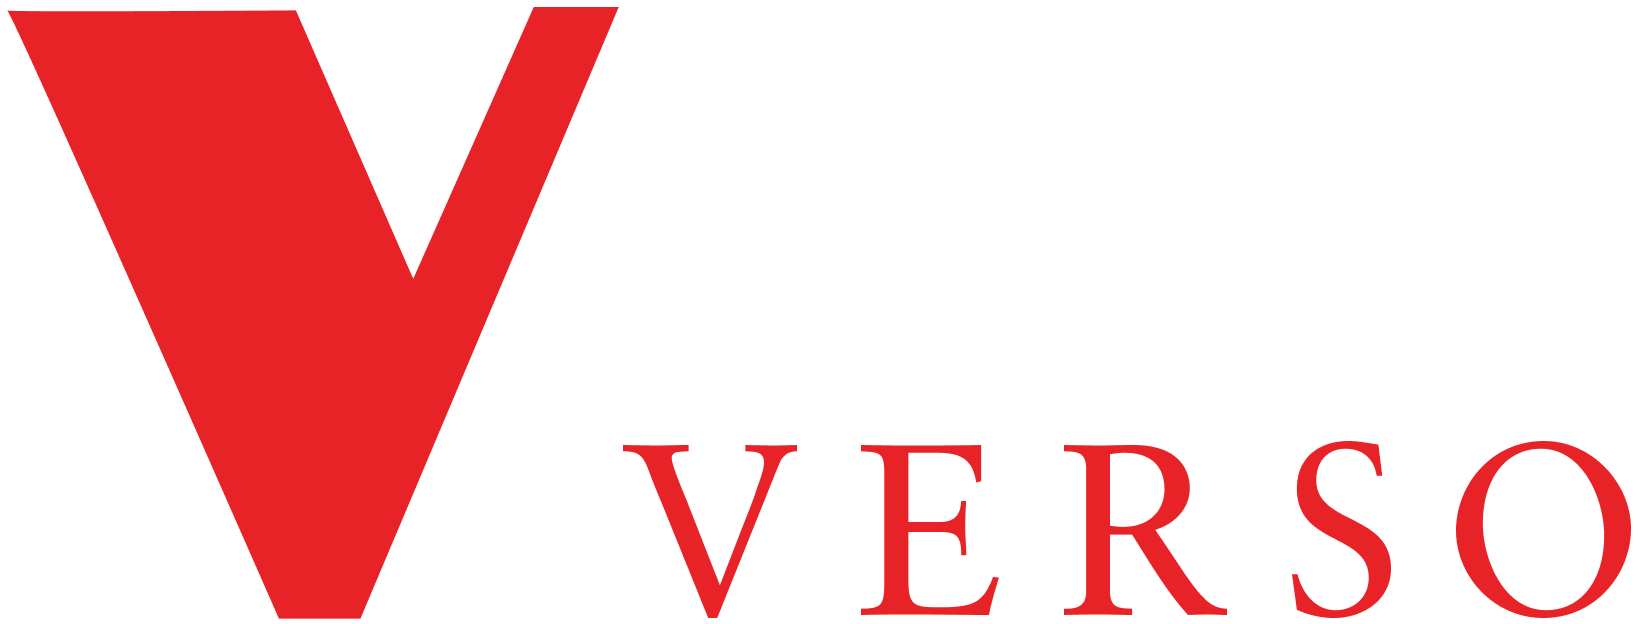 Verso Books logo